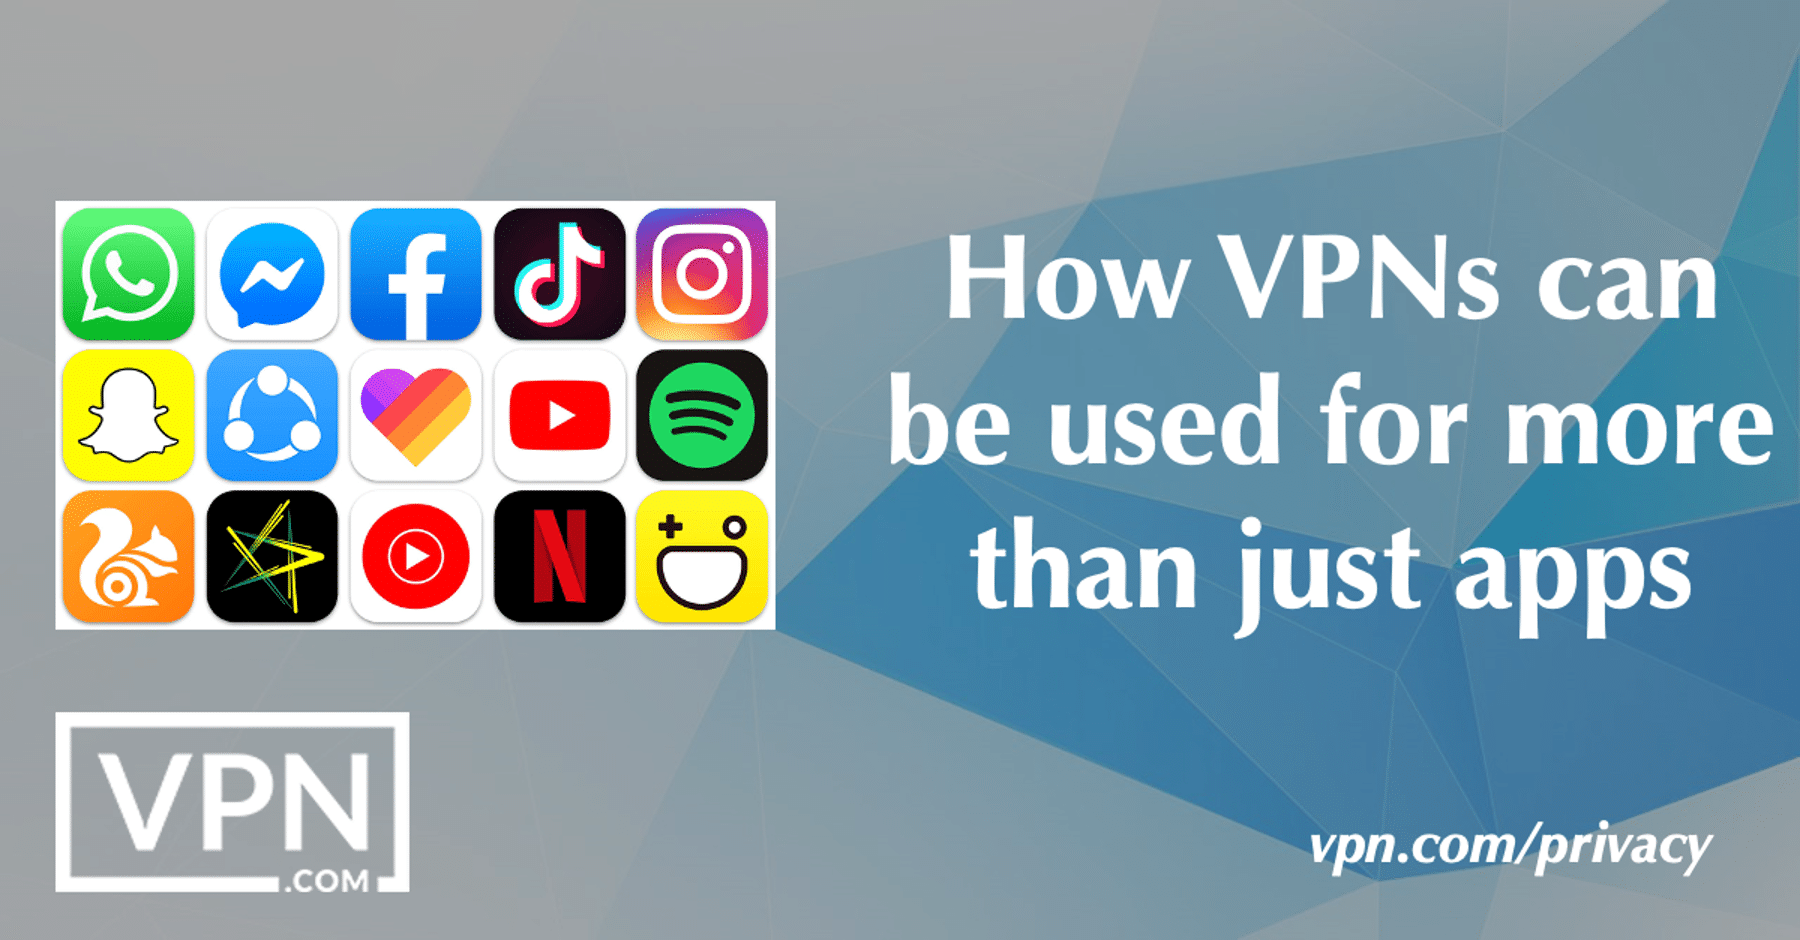 Kako lahko VPN uporabljate za več kot le aplikacije